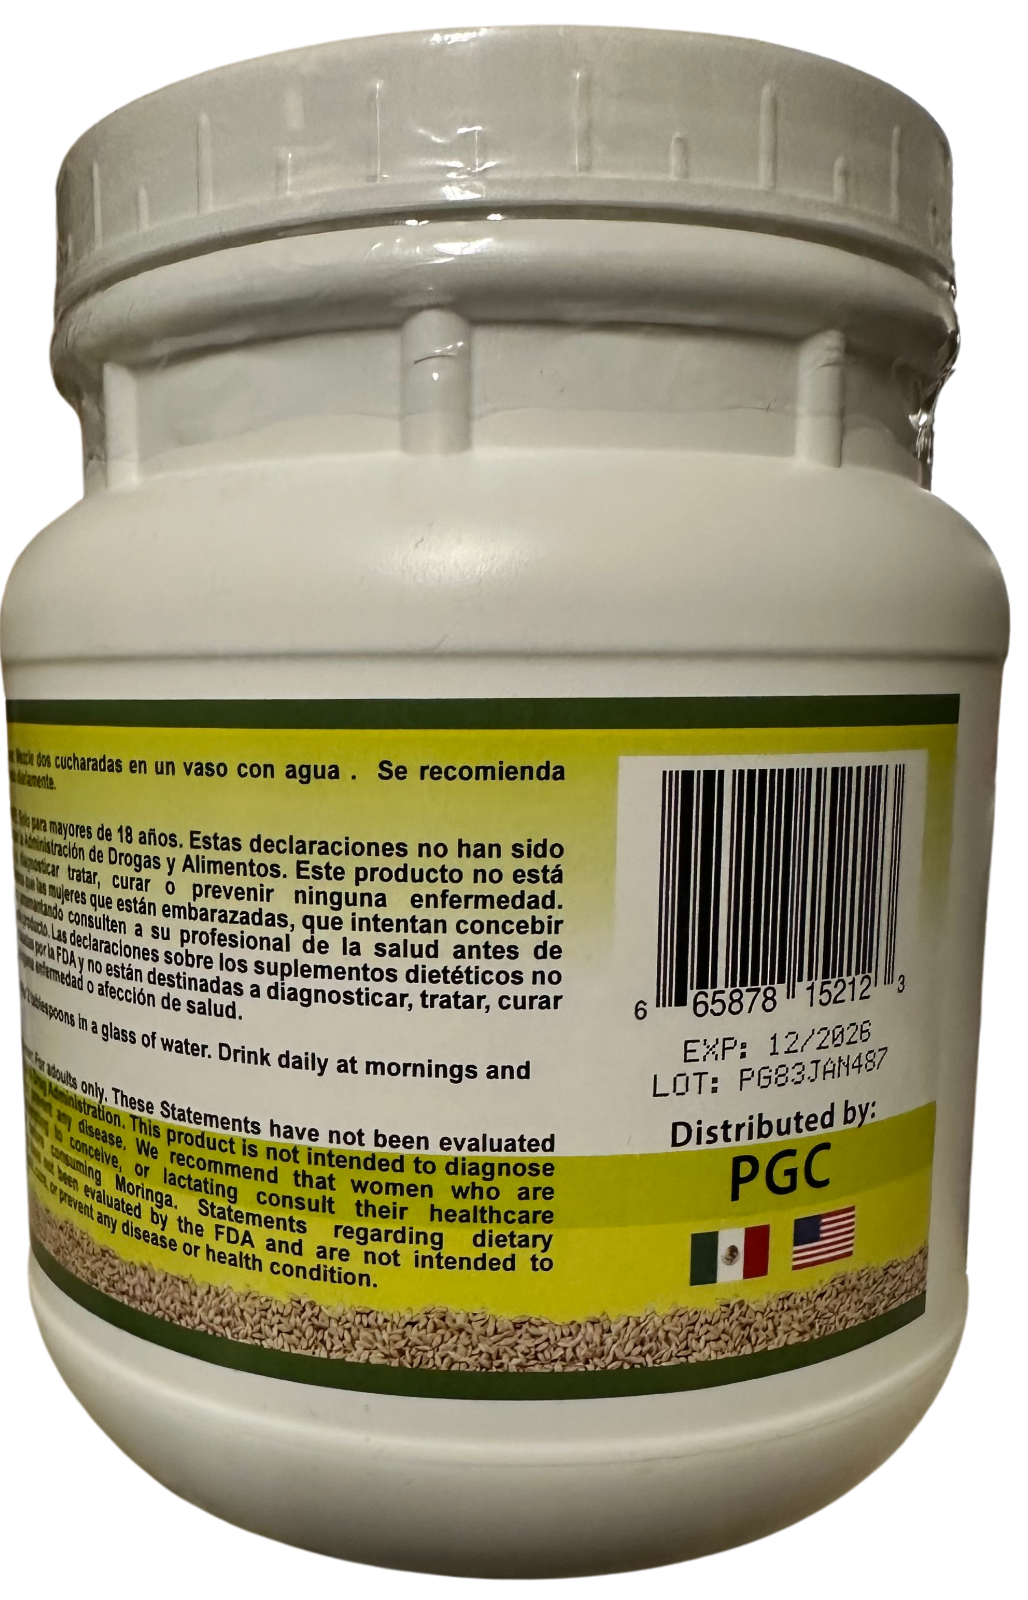 Leche de Alpiste (454g) Canary Seed Milk / 100% Natural Suplemento Alimenticio LO+NATURAL - image 5 of 9